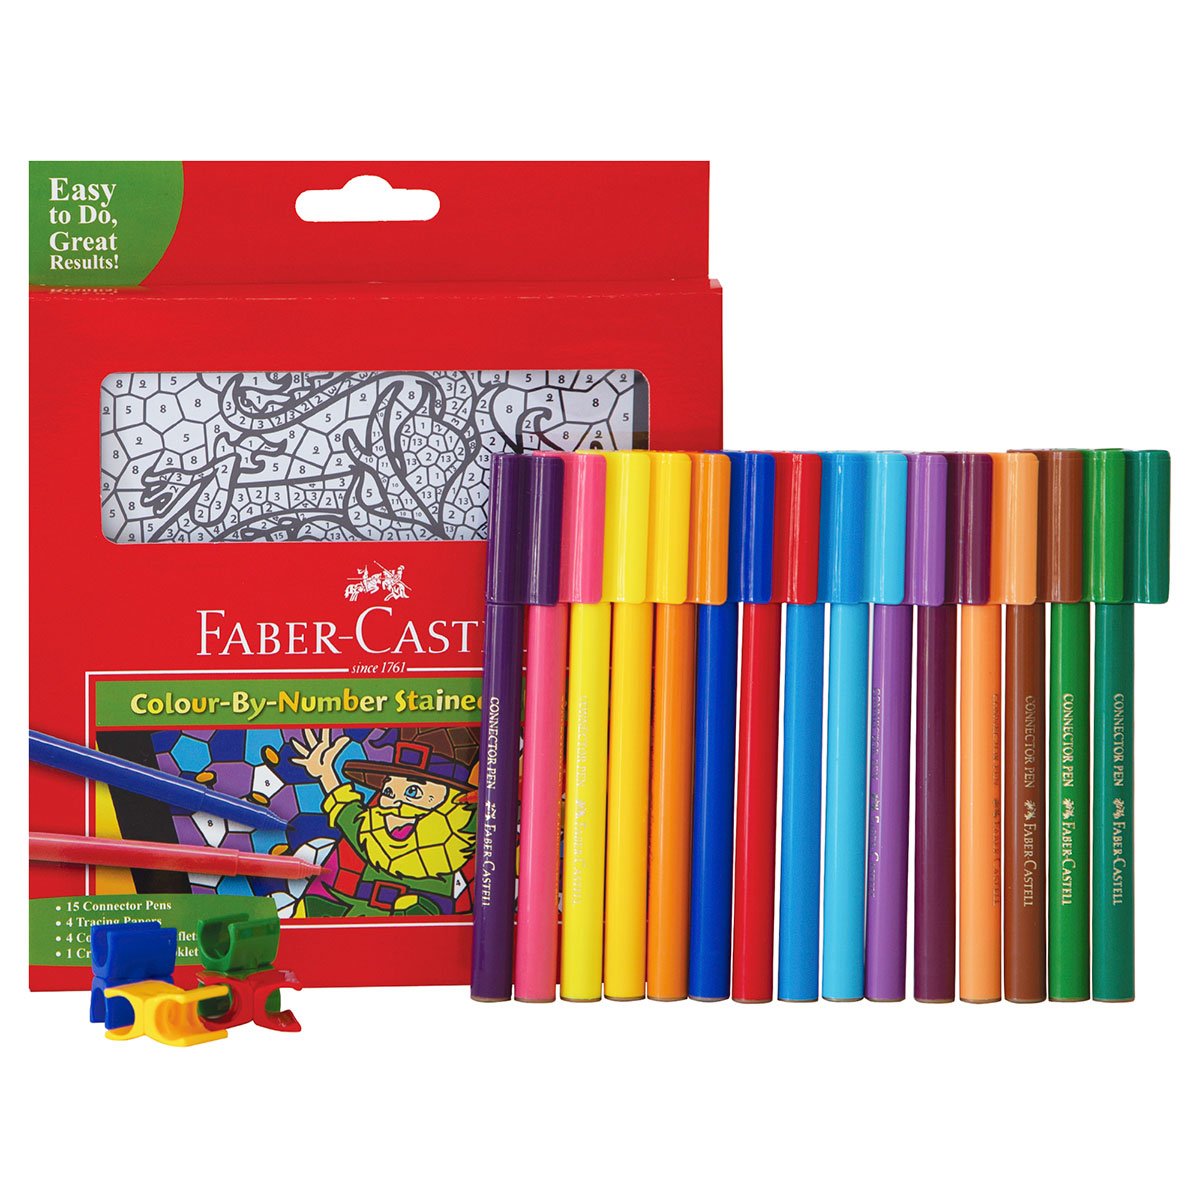 Plumones Faber Castell Set para Colorear por Numero c/15 plumones